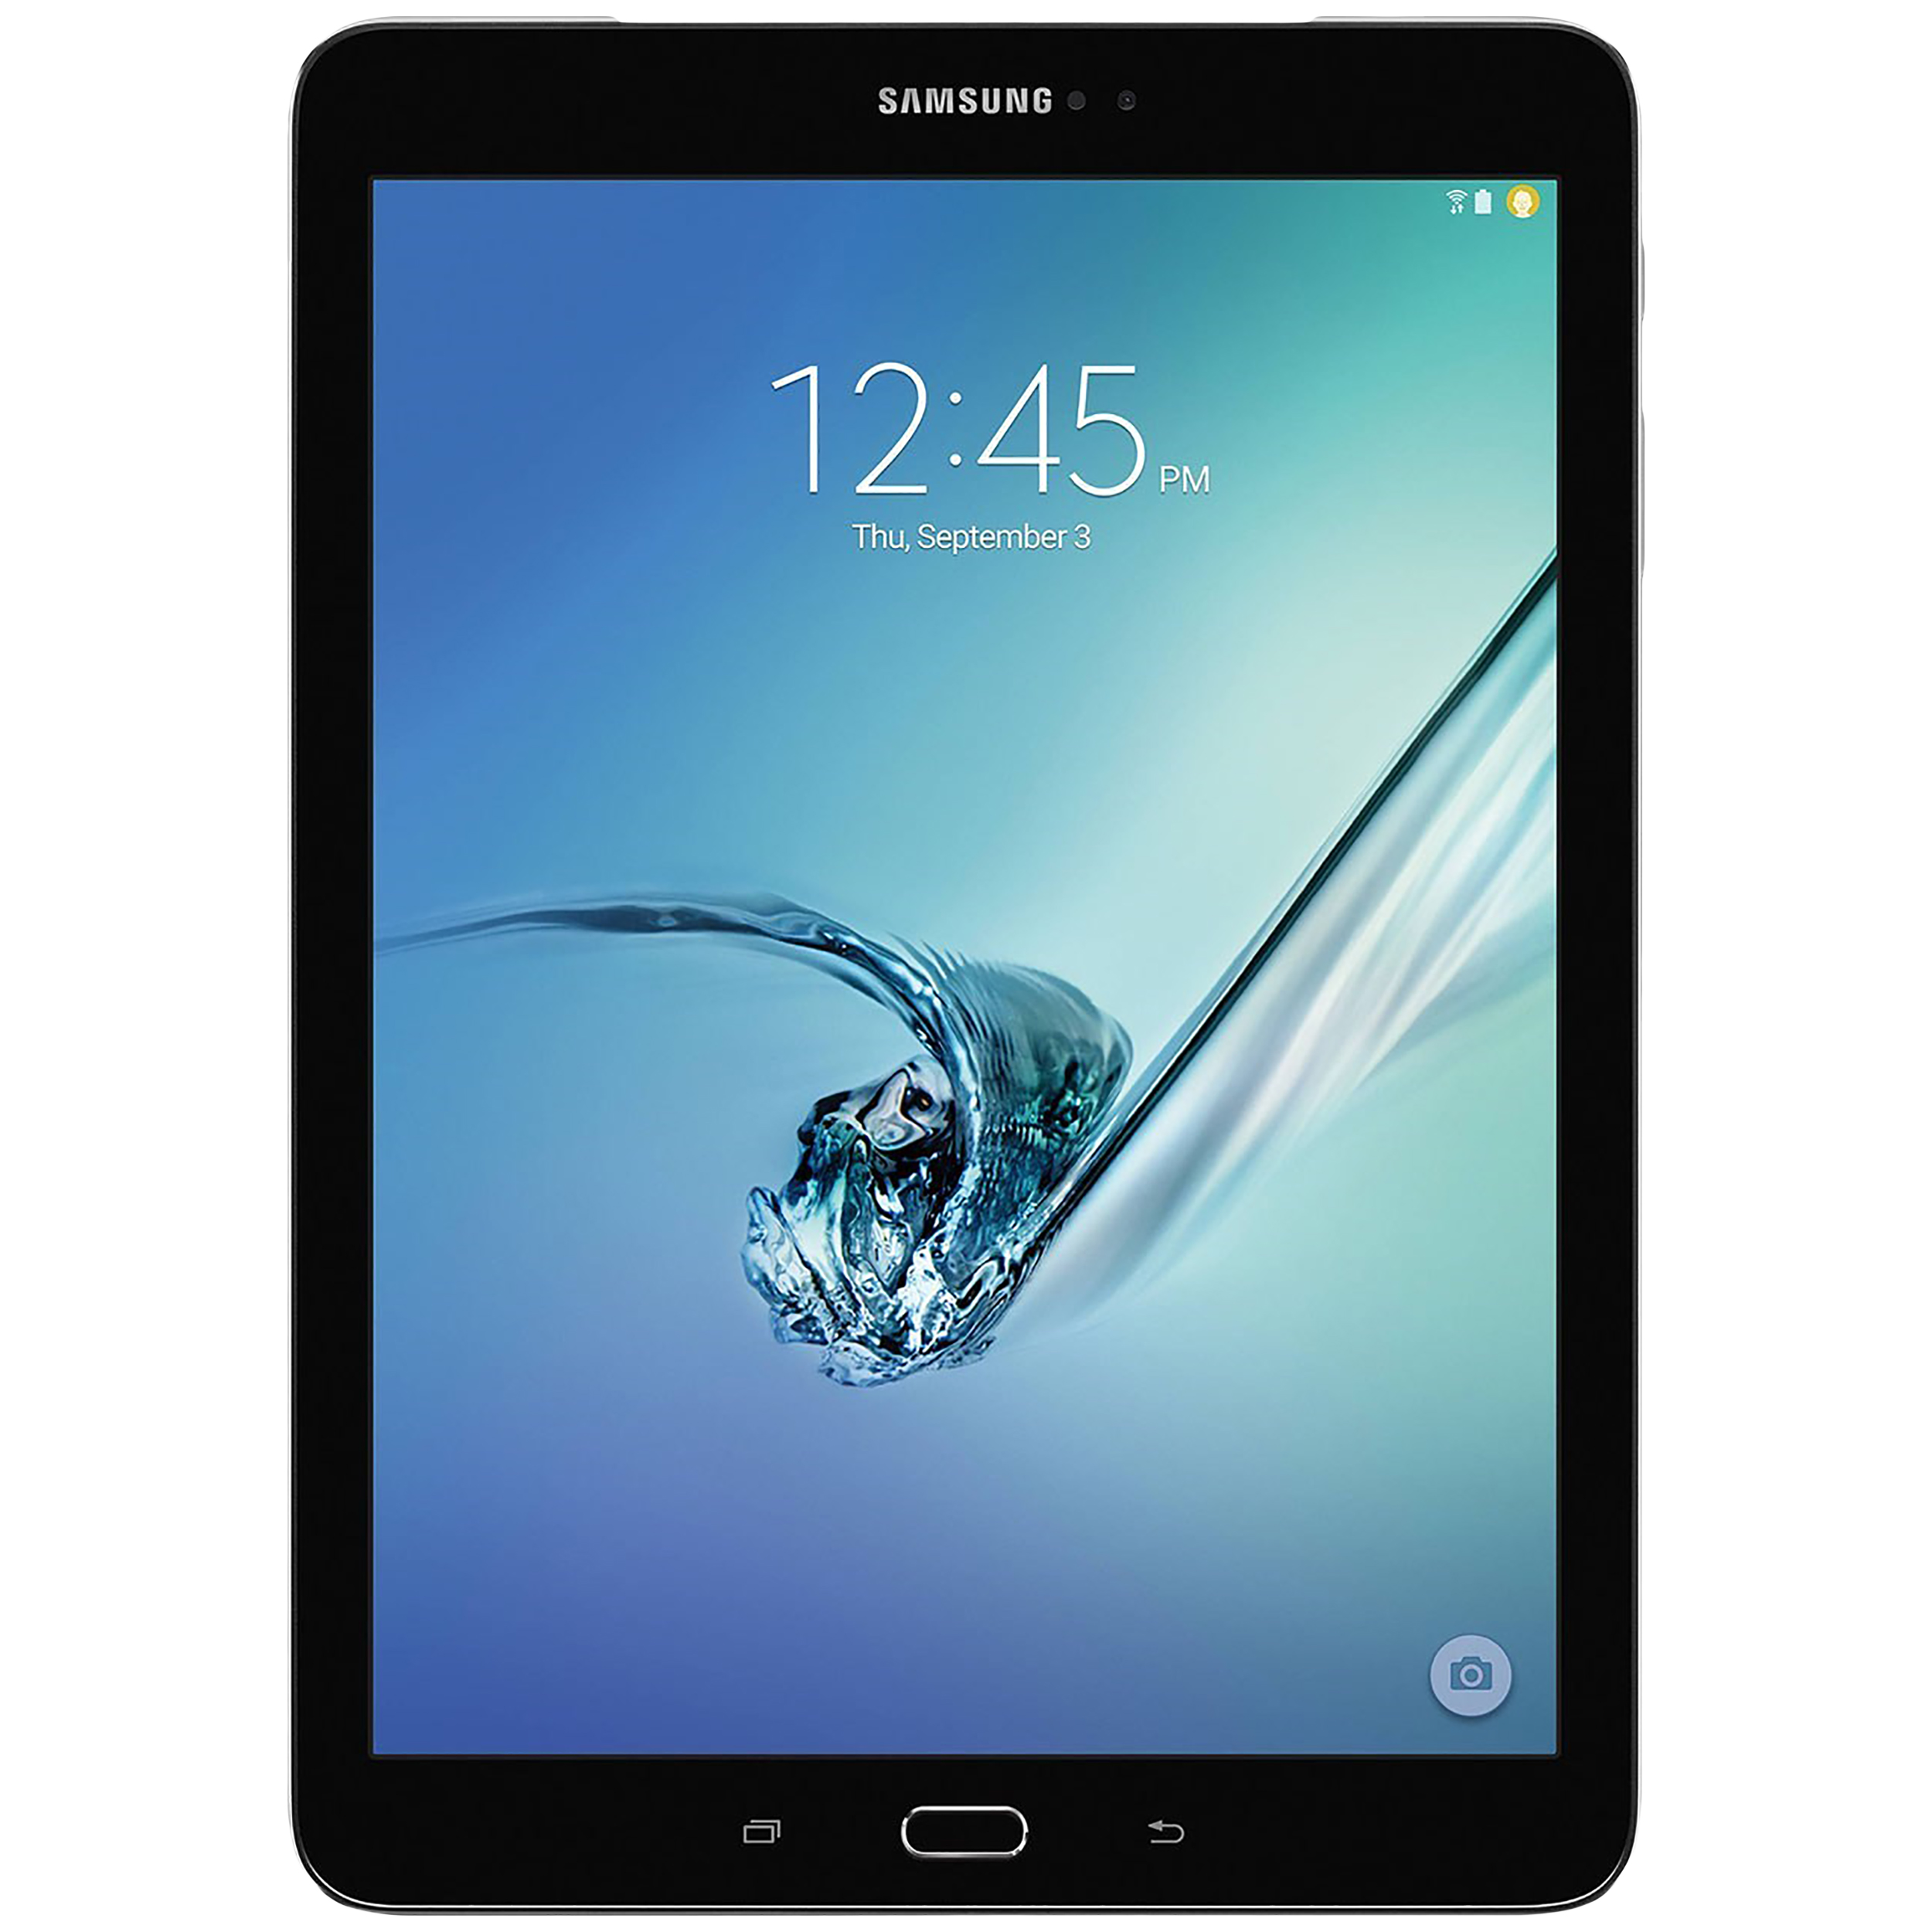 تبلت سامسونگ مدل Galaxy Tab S2 9.7 New WiFi ظرفیت 32 گیگابایت